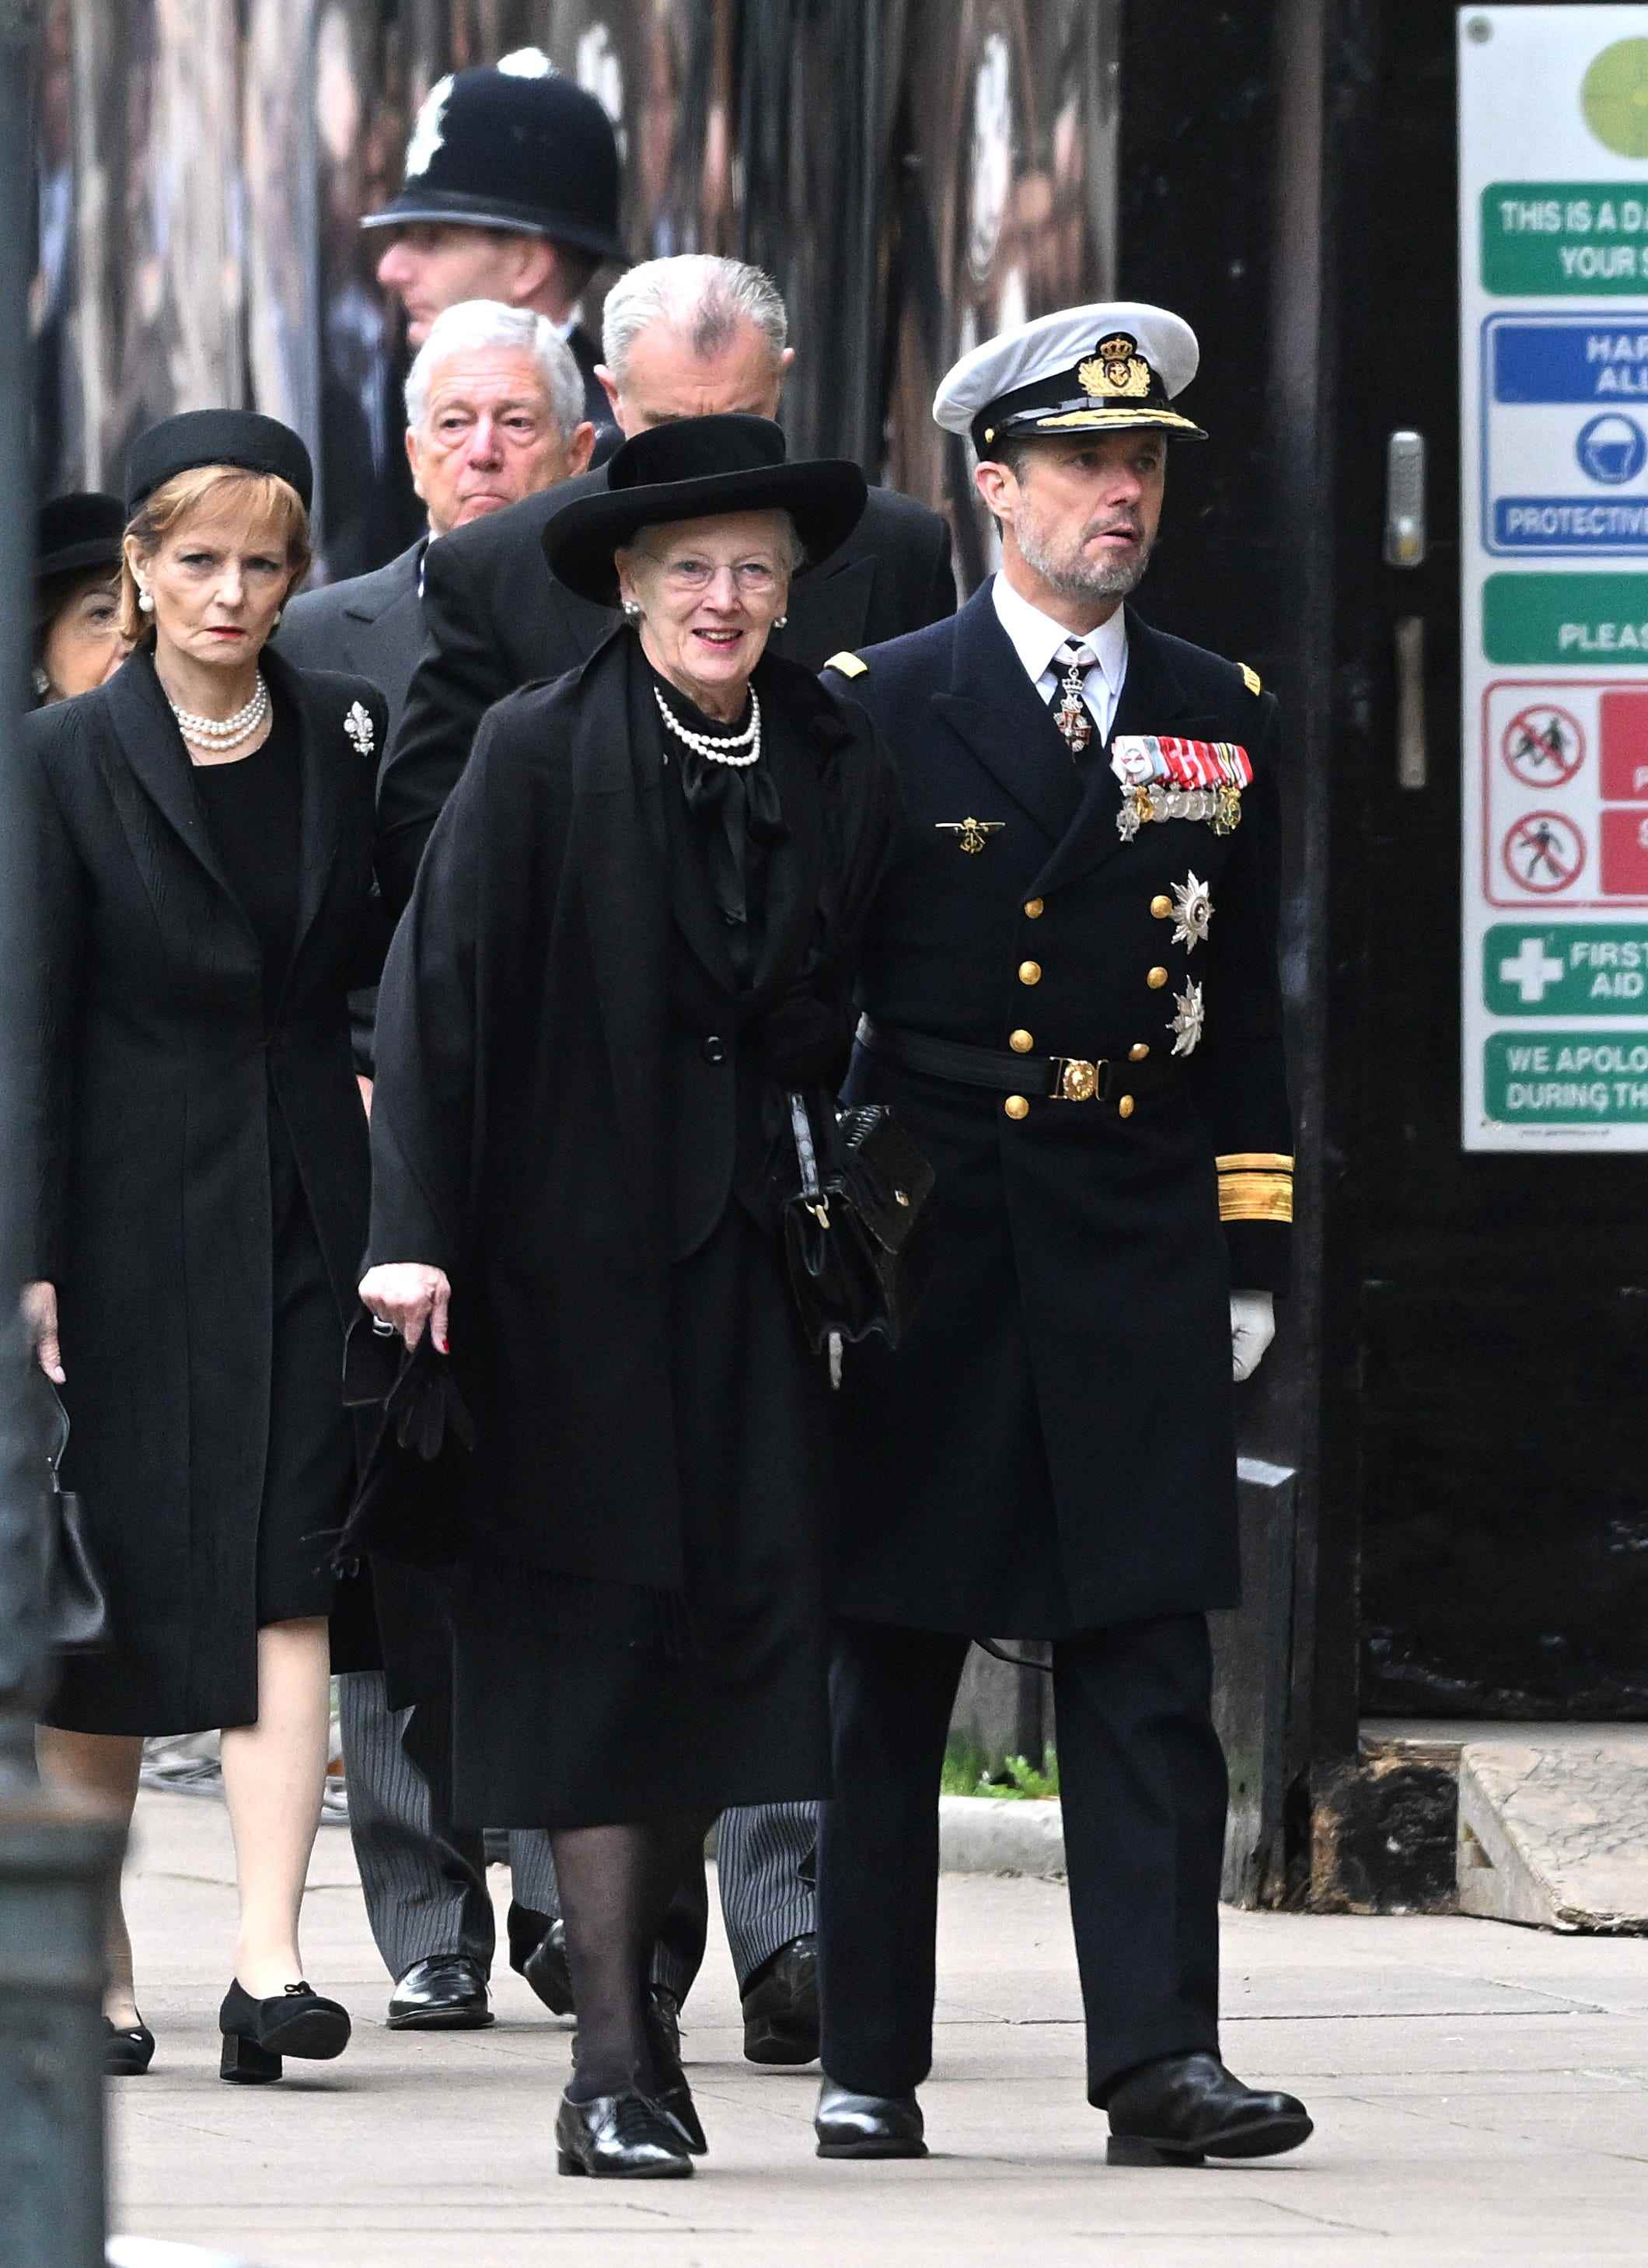 Margrethe II. von Dänemark und Frederik, Kronprinz von Dänemark, treffen am 19. September 2022 zum Staatsbegräbnis von Königin Elizabeth II. in der Westminster Abbey in London ein.